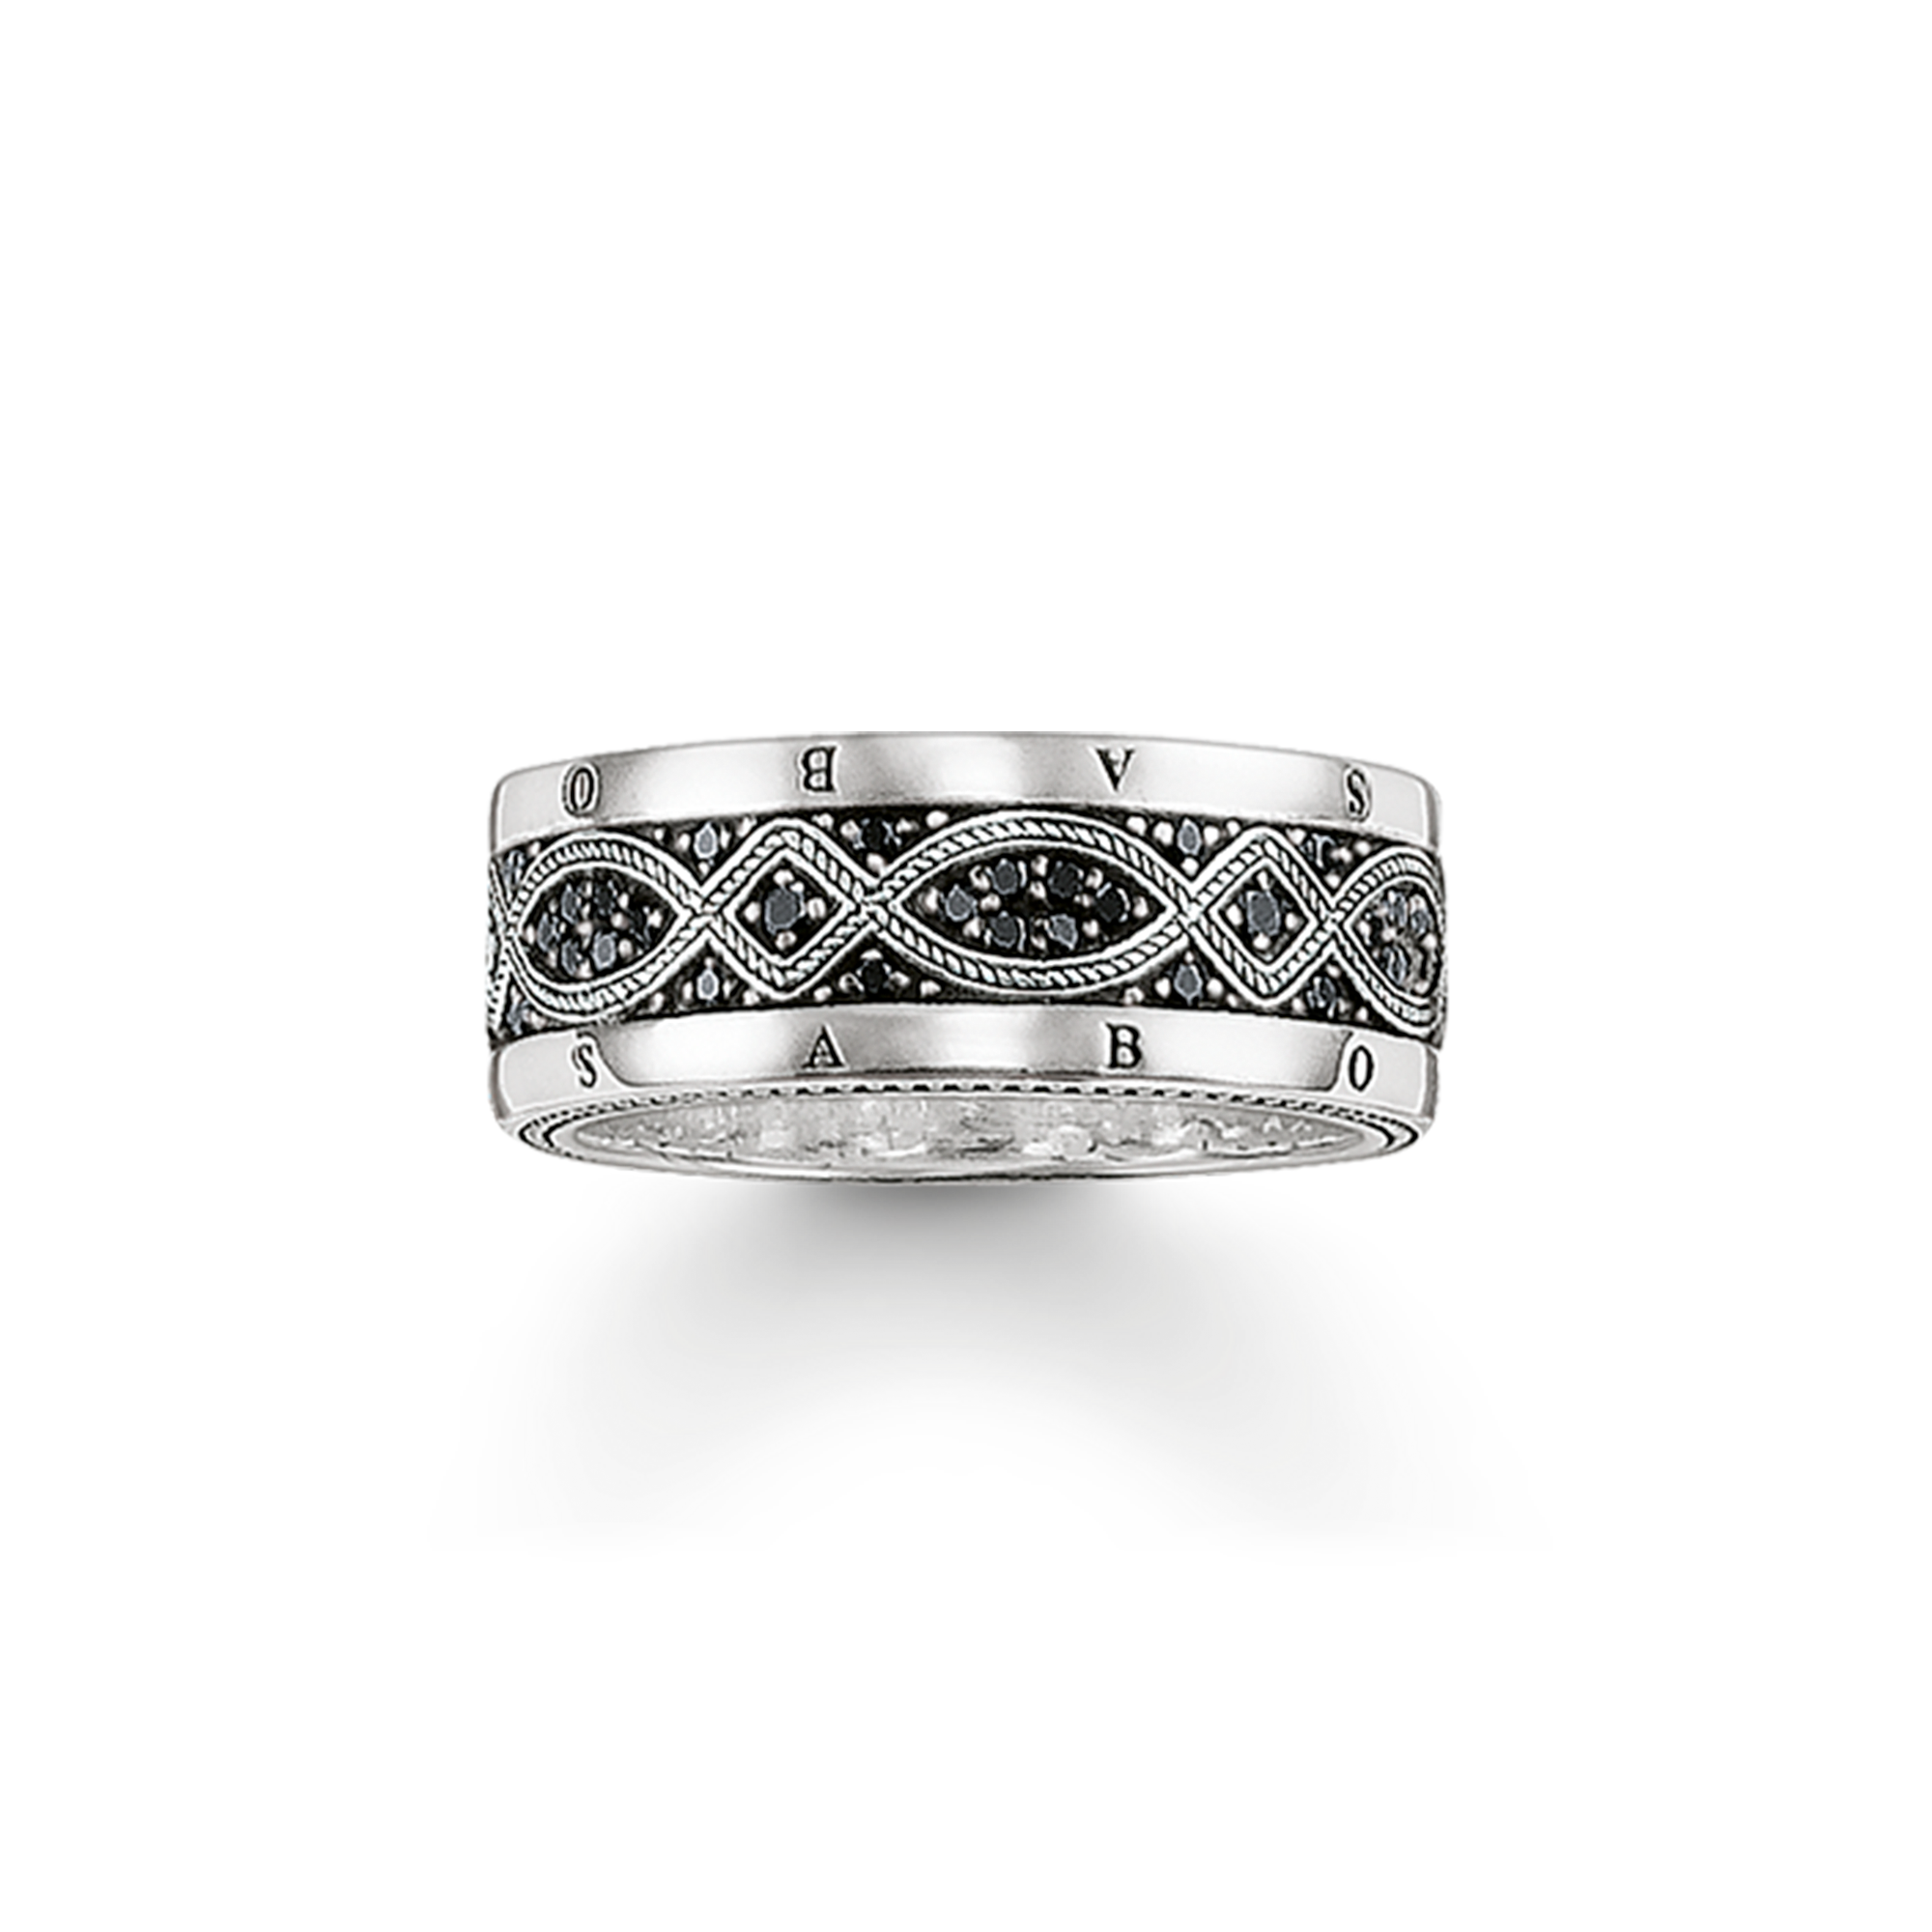 Inspiriert durch das rebellische Loveknot-Design der neuen Saison ergänzt dieser Ring ideal die weiteren Schmuckstücke der Serie. - 0